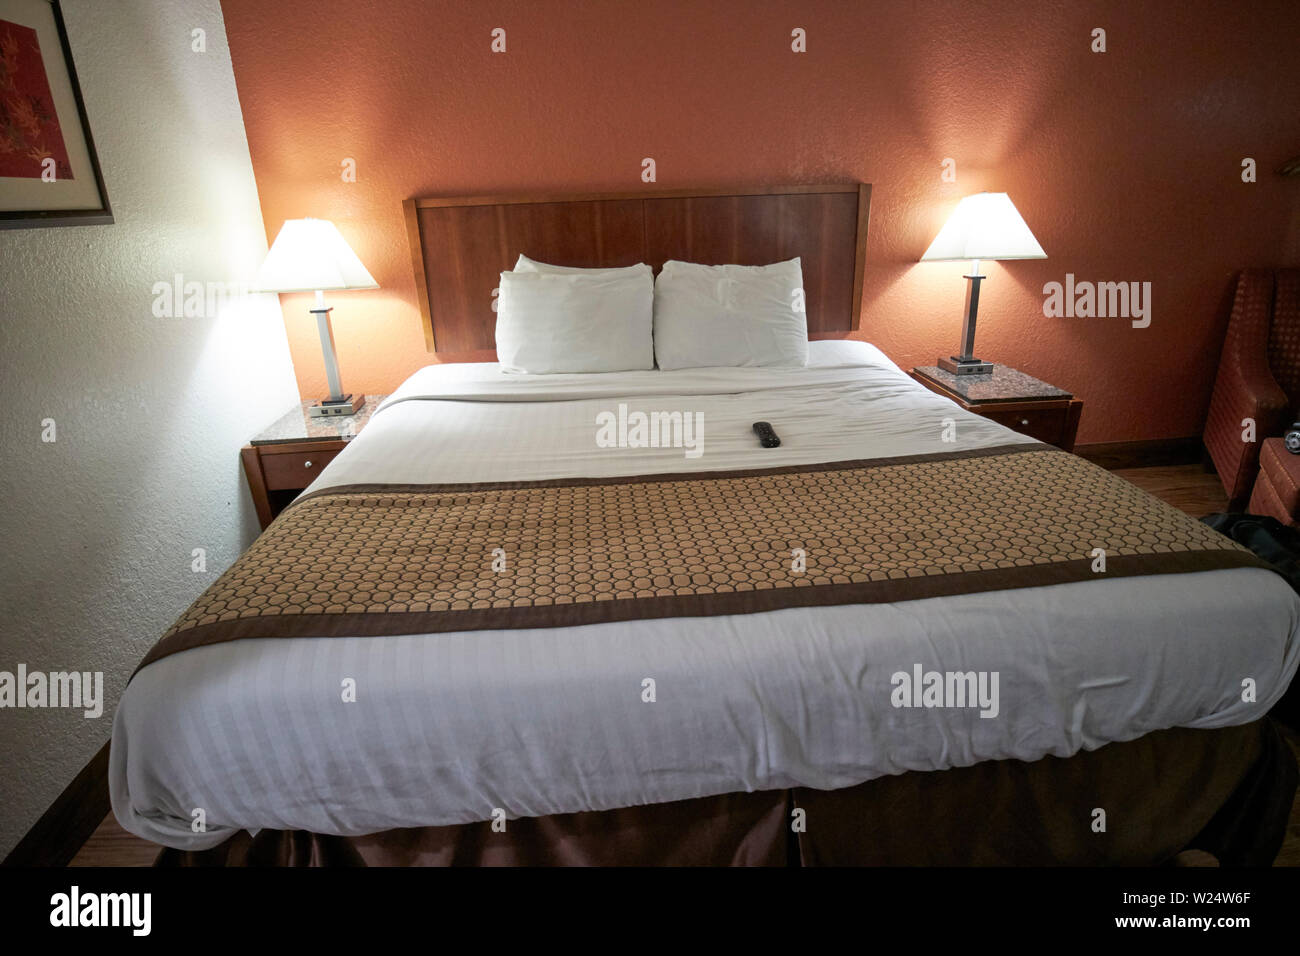 King Bett in einem billigen Hotel Zimmer Georgia USA Stockfotografie - Alamy